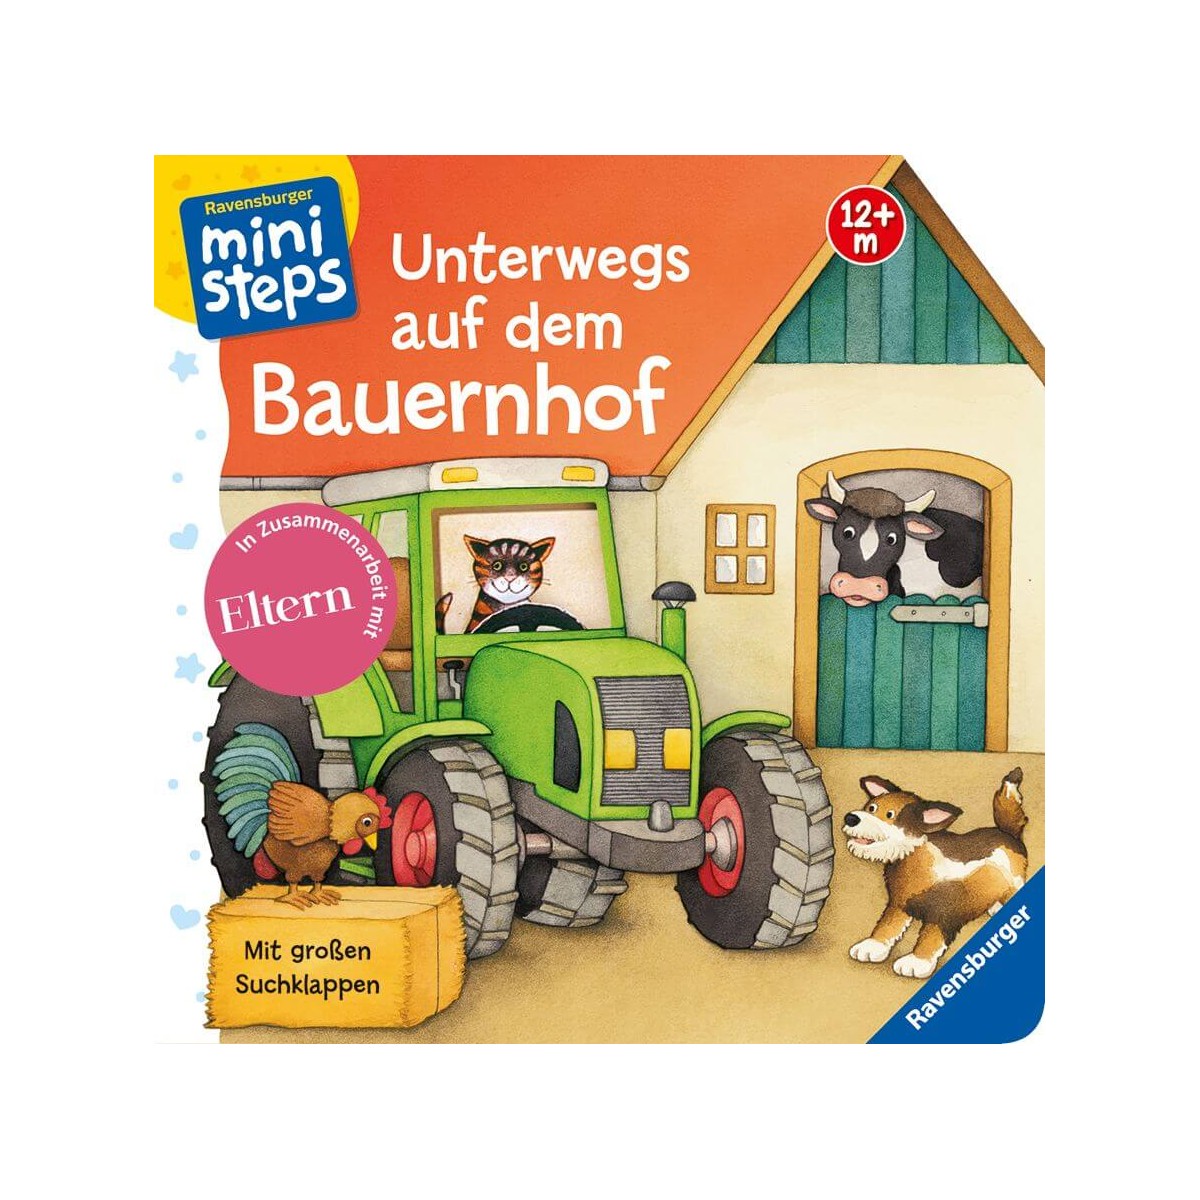 Ravensburger Buch   ministeps   Bilderbuch   Unterwegs auf dem Bauernhof